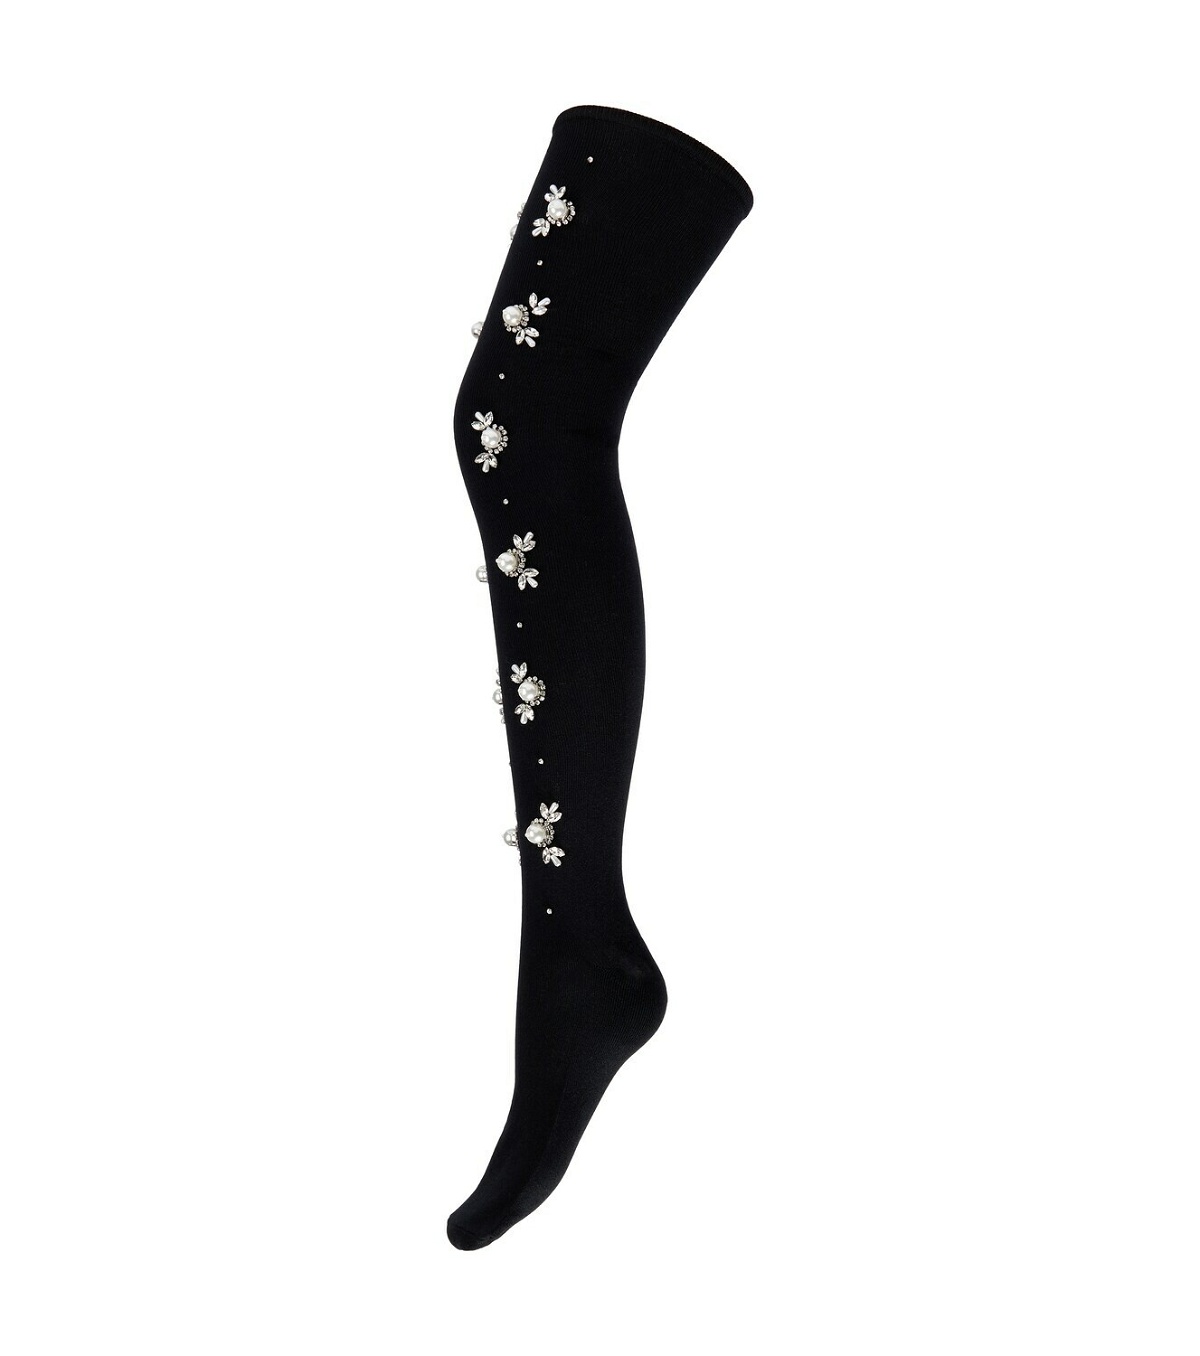 Simone Rocha - Embellished over-the-knee socks Simone Rocha